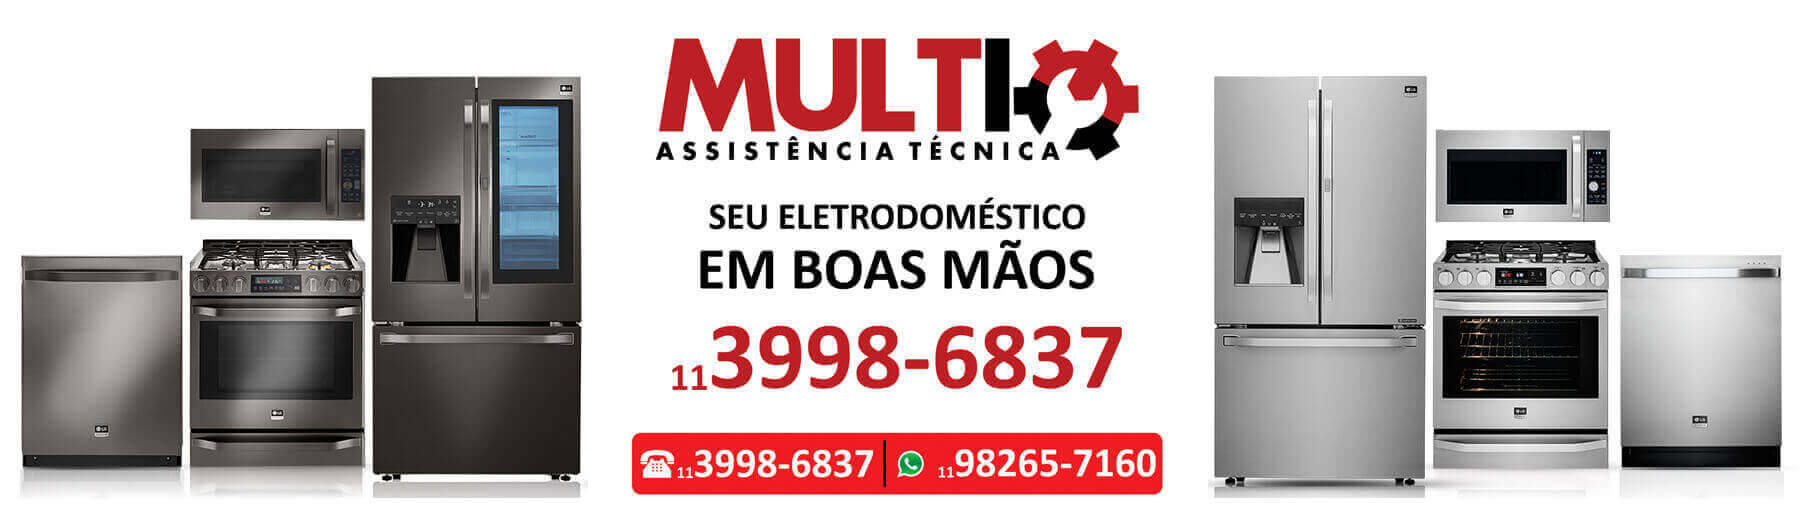 Serviços técnicos na região Calçada das Violetas importados e nacionais